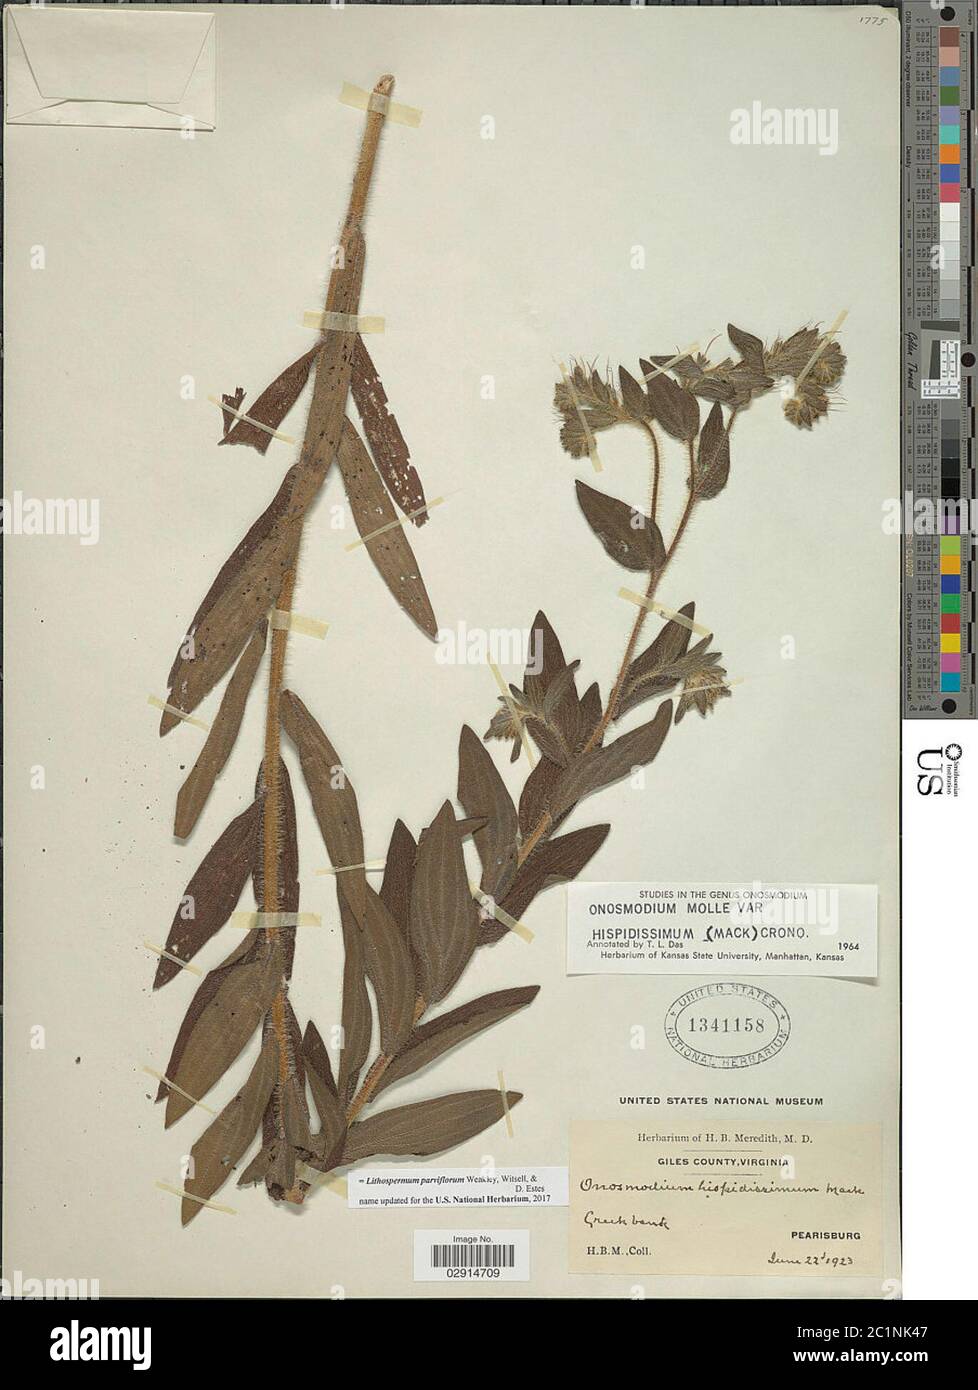 Lithospermum parviflorum Weakley et al Lithospermum parviflorum Weakley et al. Stock Photo